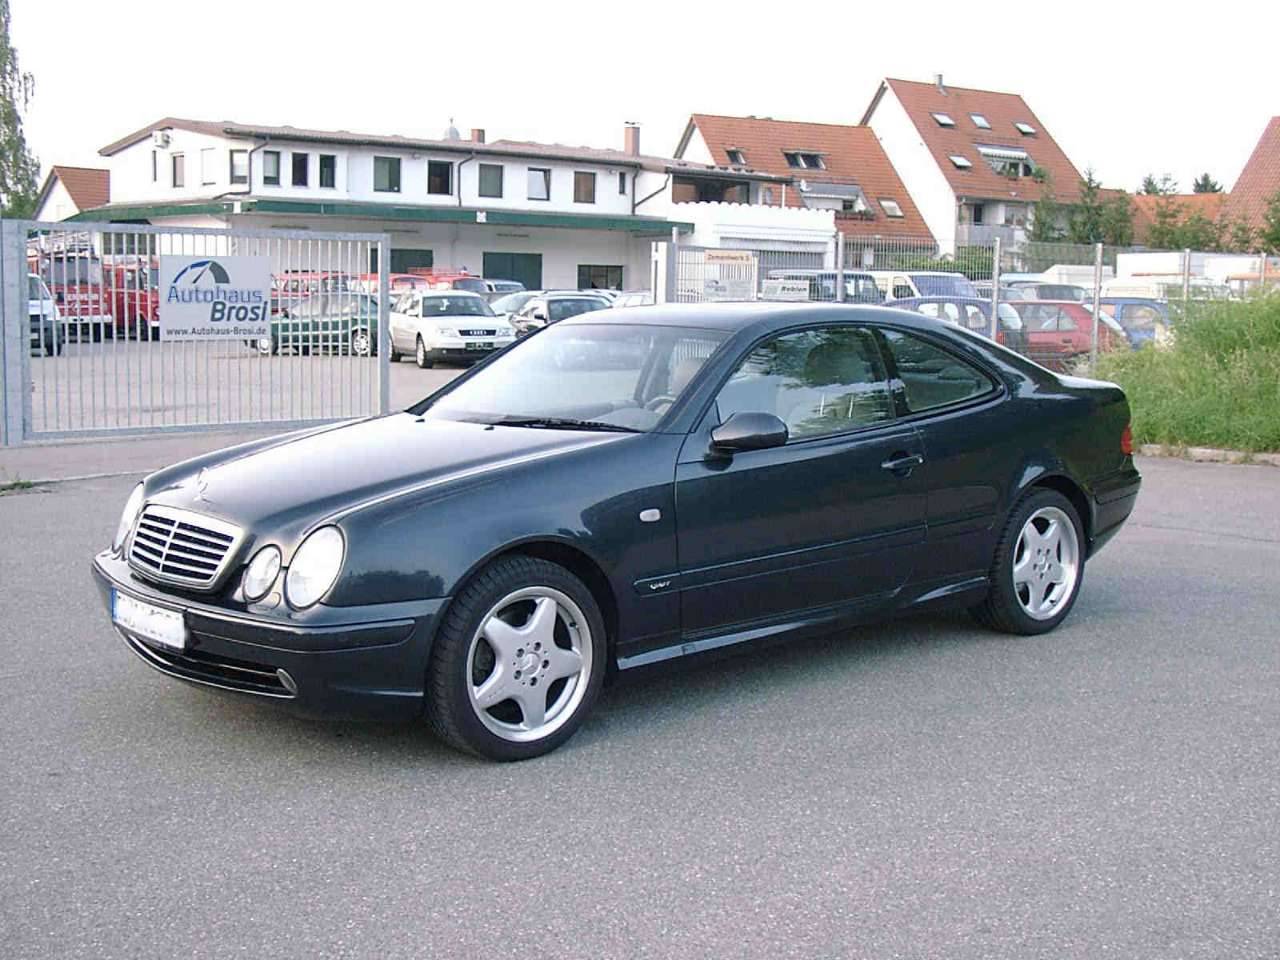 MercedesBenz CLK 320 (2000) für 15.950 EUR kaufen